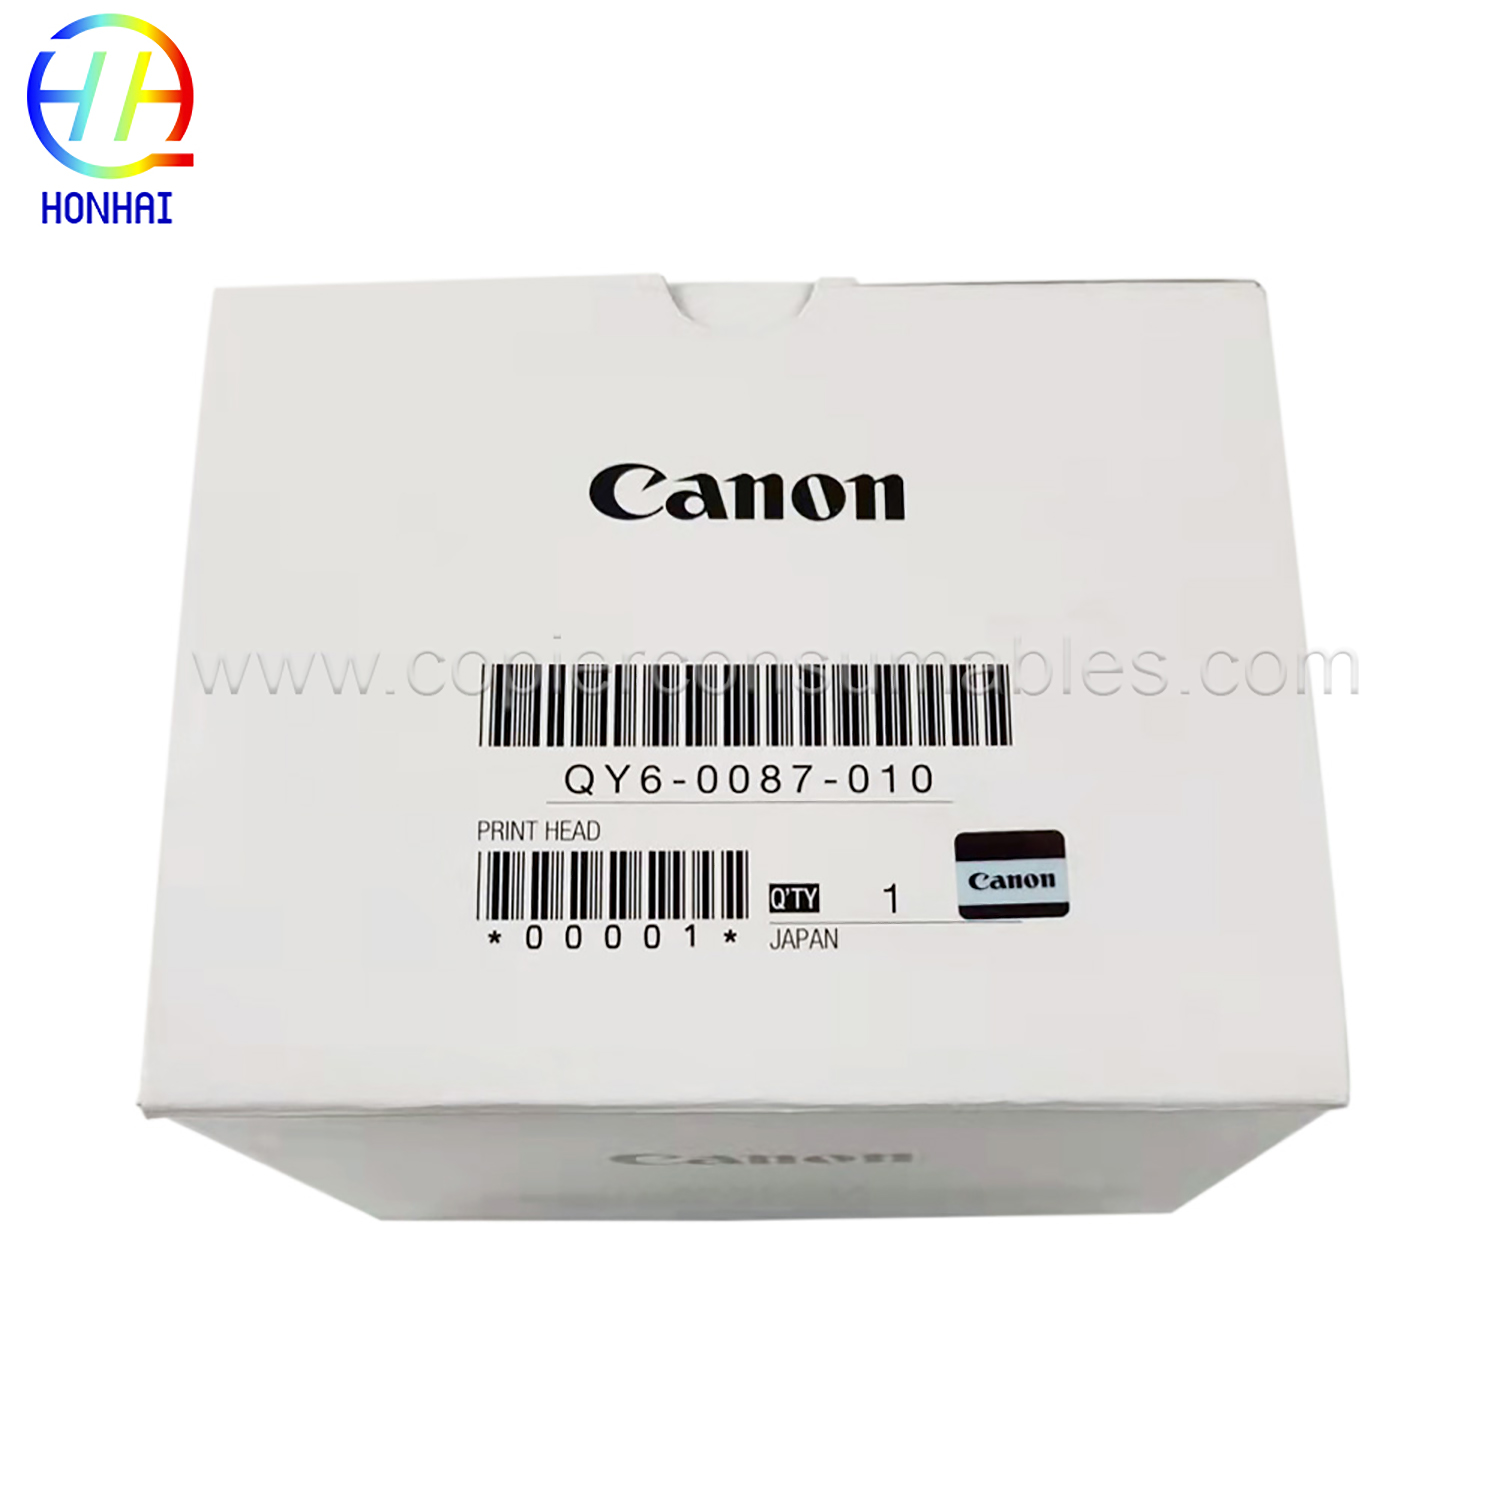 Ispisna glava za CANON QY6-0087-000 Maxify ib4020 mb2020 mb2320 mb5020 (1) 拷贝